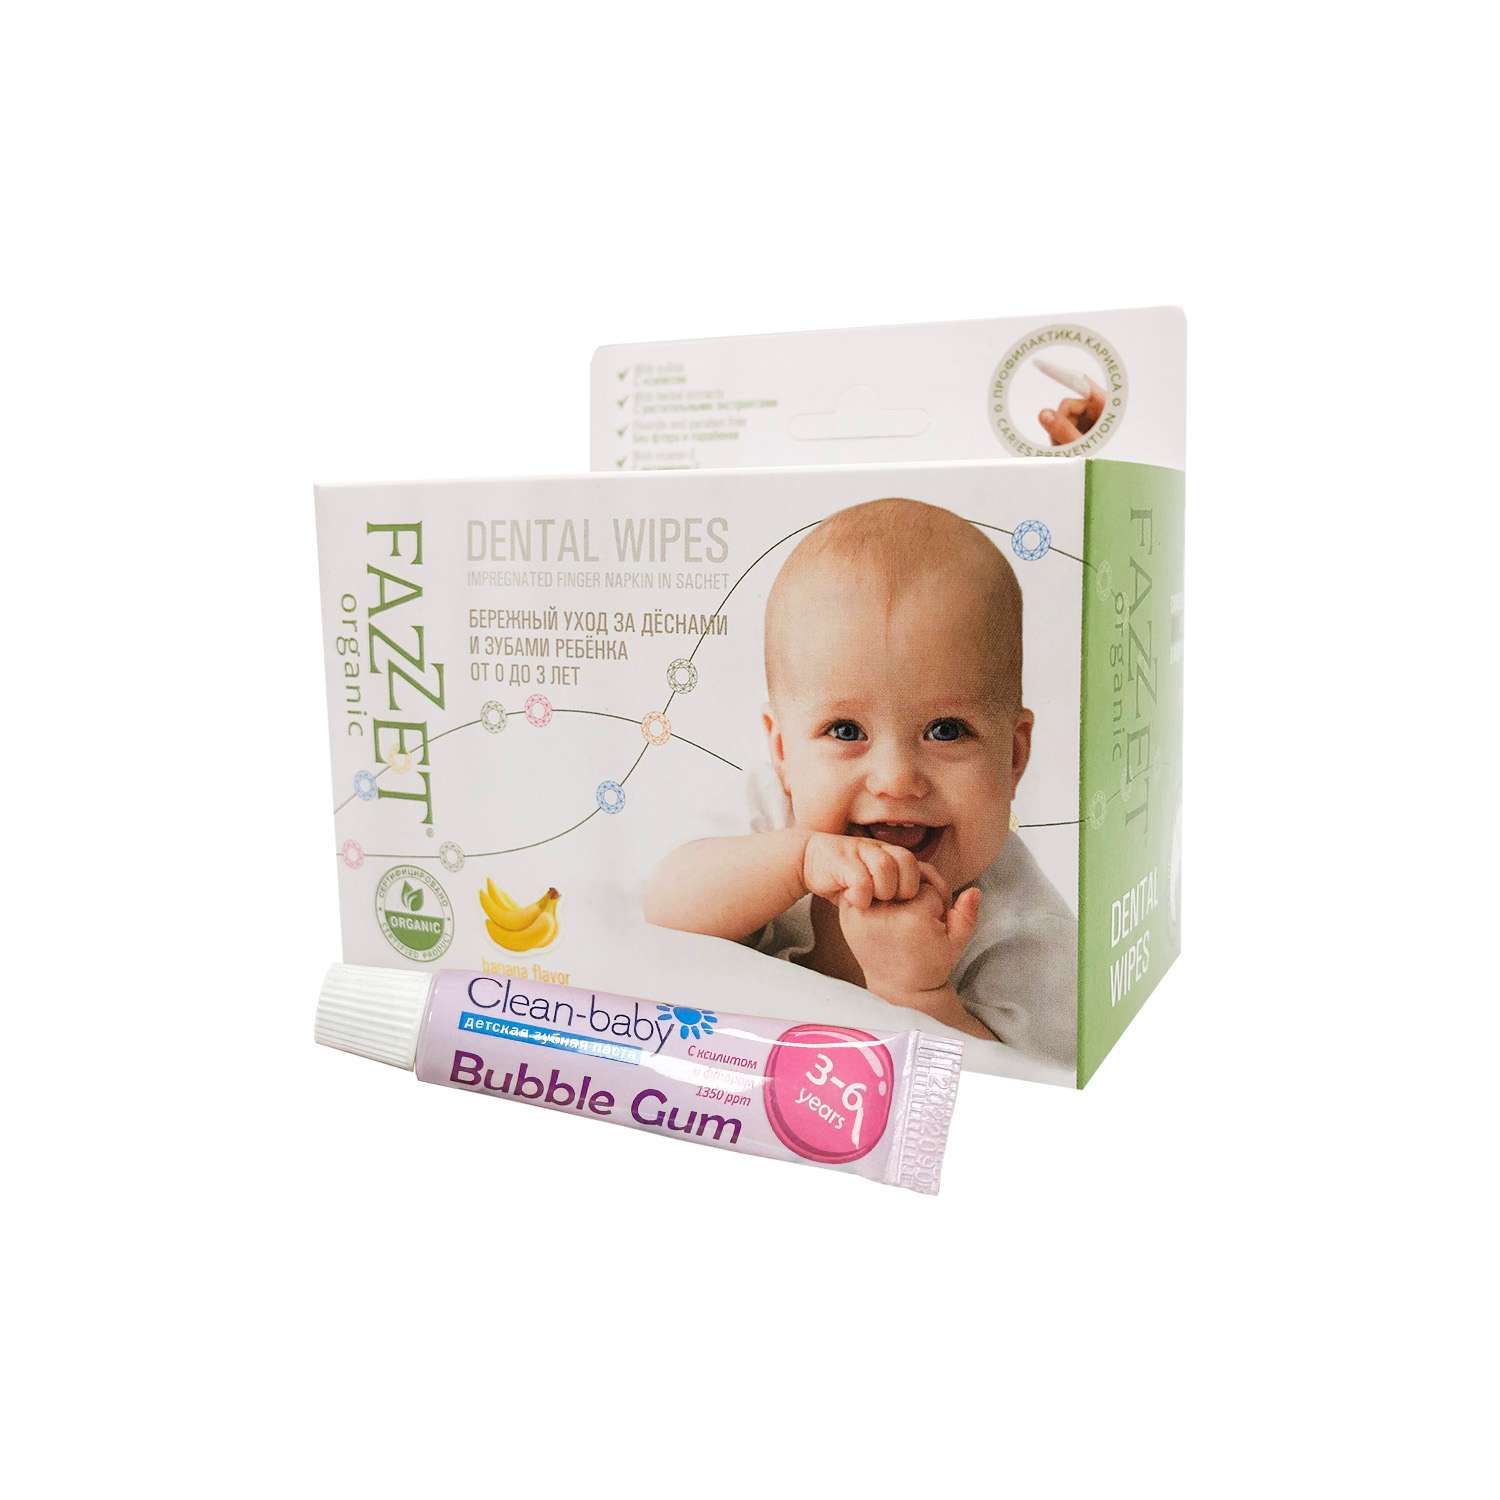 Детские салфетки Fazzet ORGANIC для полости рта 0-3 года 28 шт и подарок зубная паста Clean-baby 3-6 лет 5 мл - фото 1